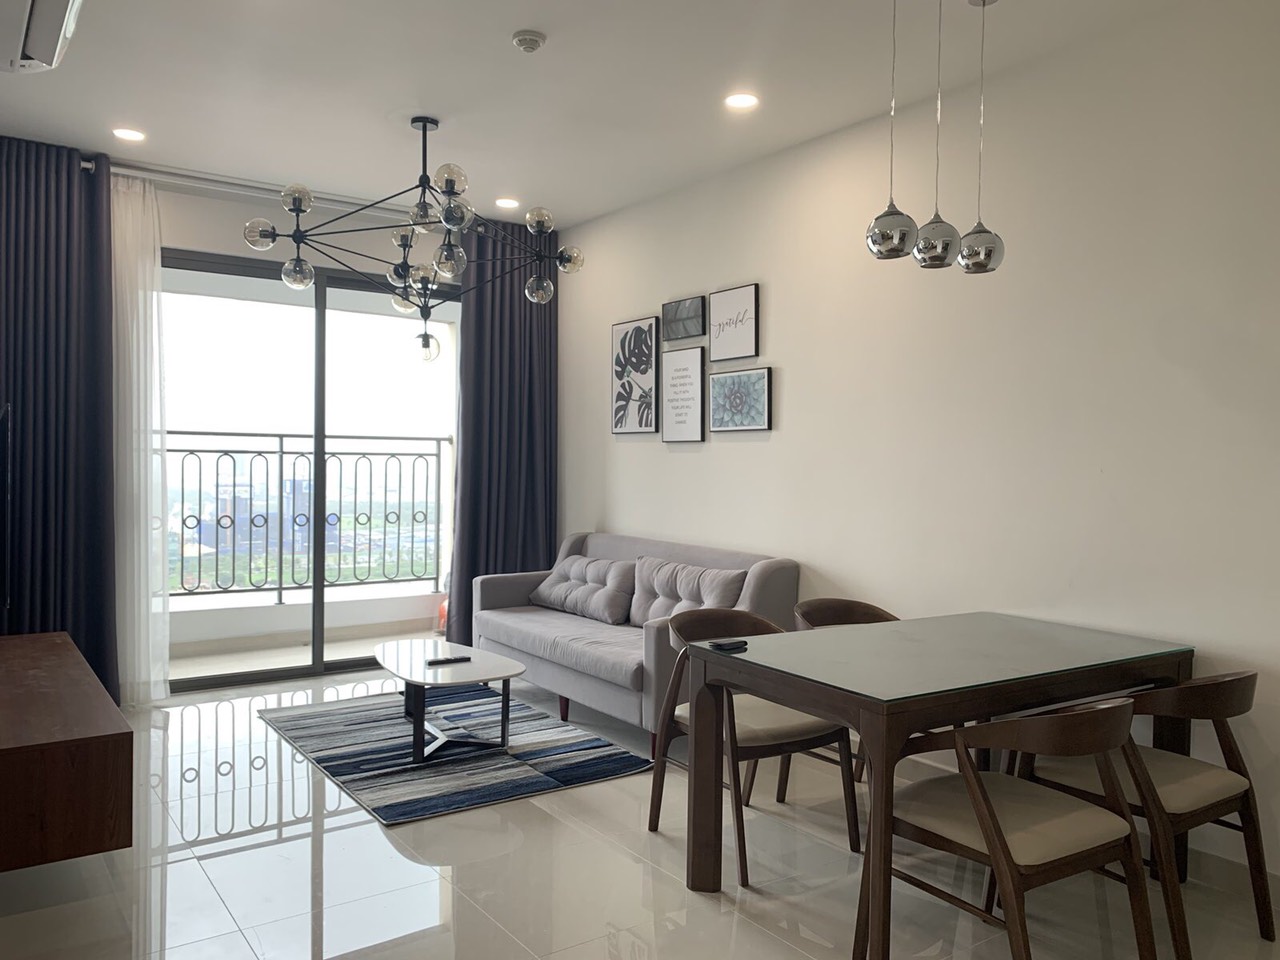 Cho thuê căn hộ chung cư tại Dự án Saigon Royal Residence, Quận 4, Tp.HCM. Liên hệ: 0906.972.055 gặp Ms. Thảo. 